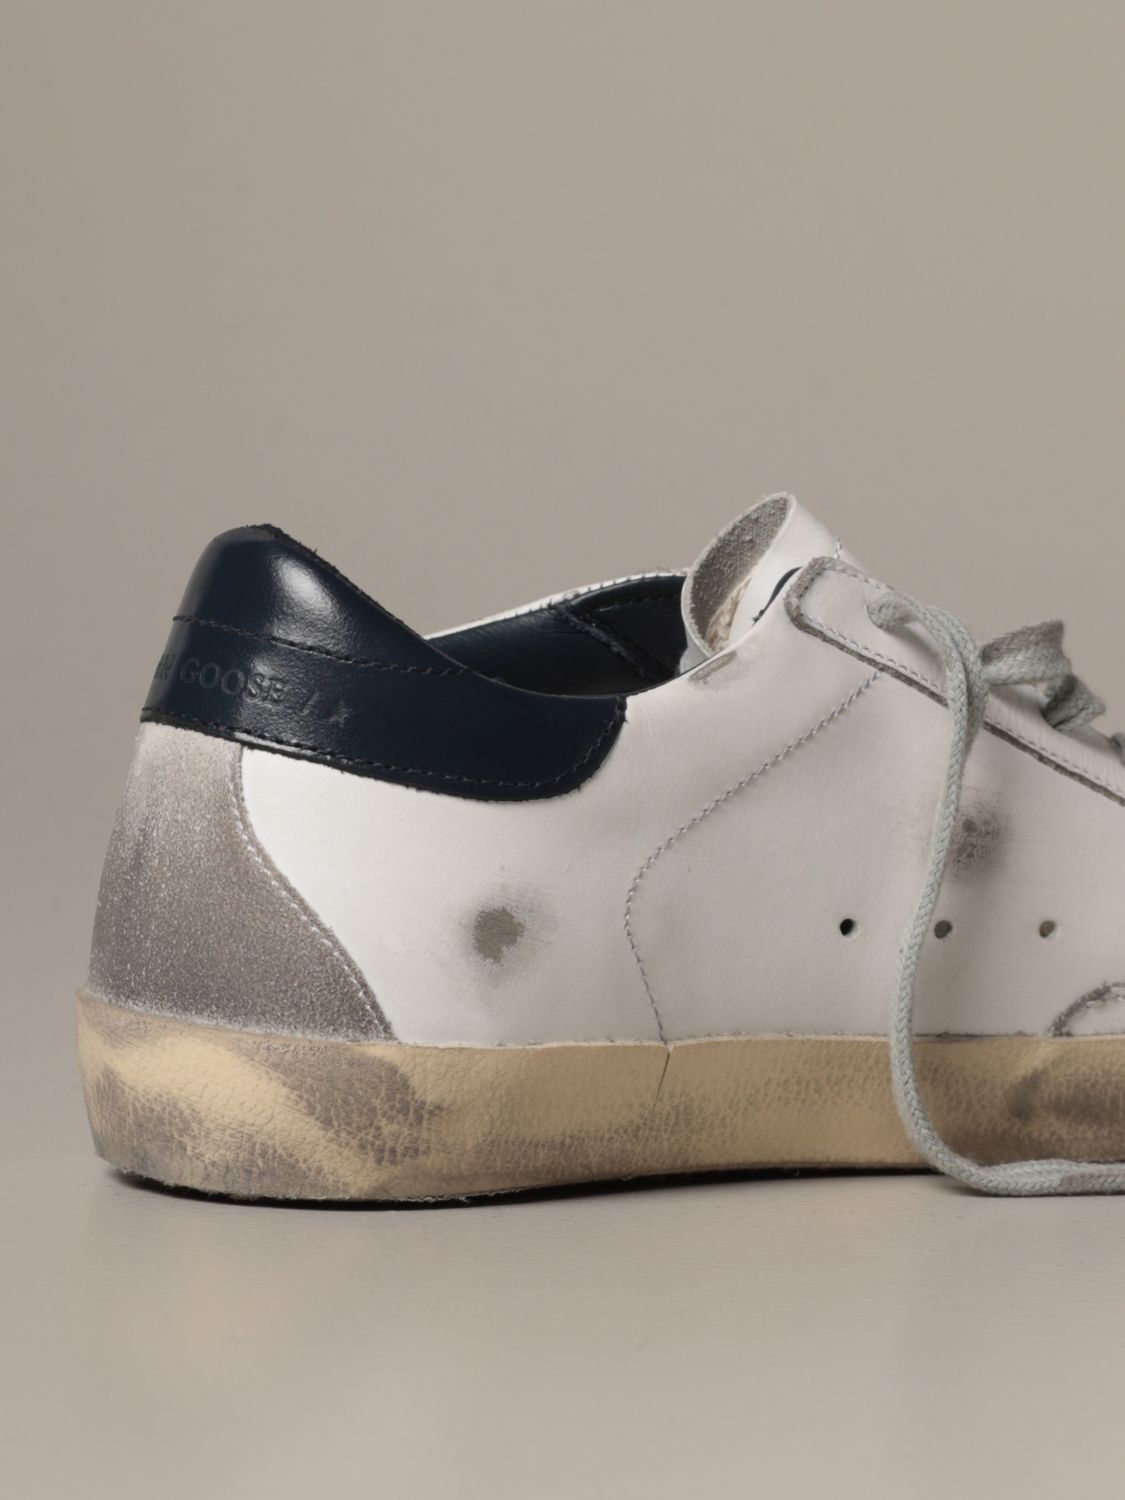 Superstar classic Golden Goose sneakers 